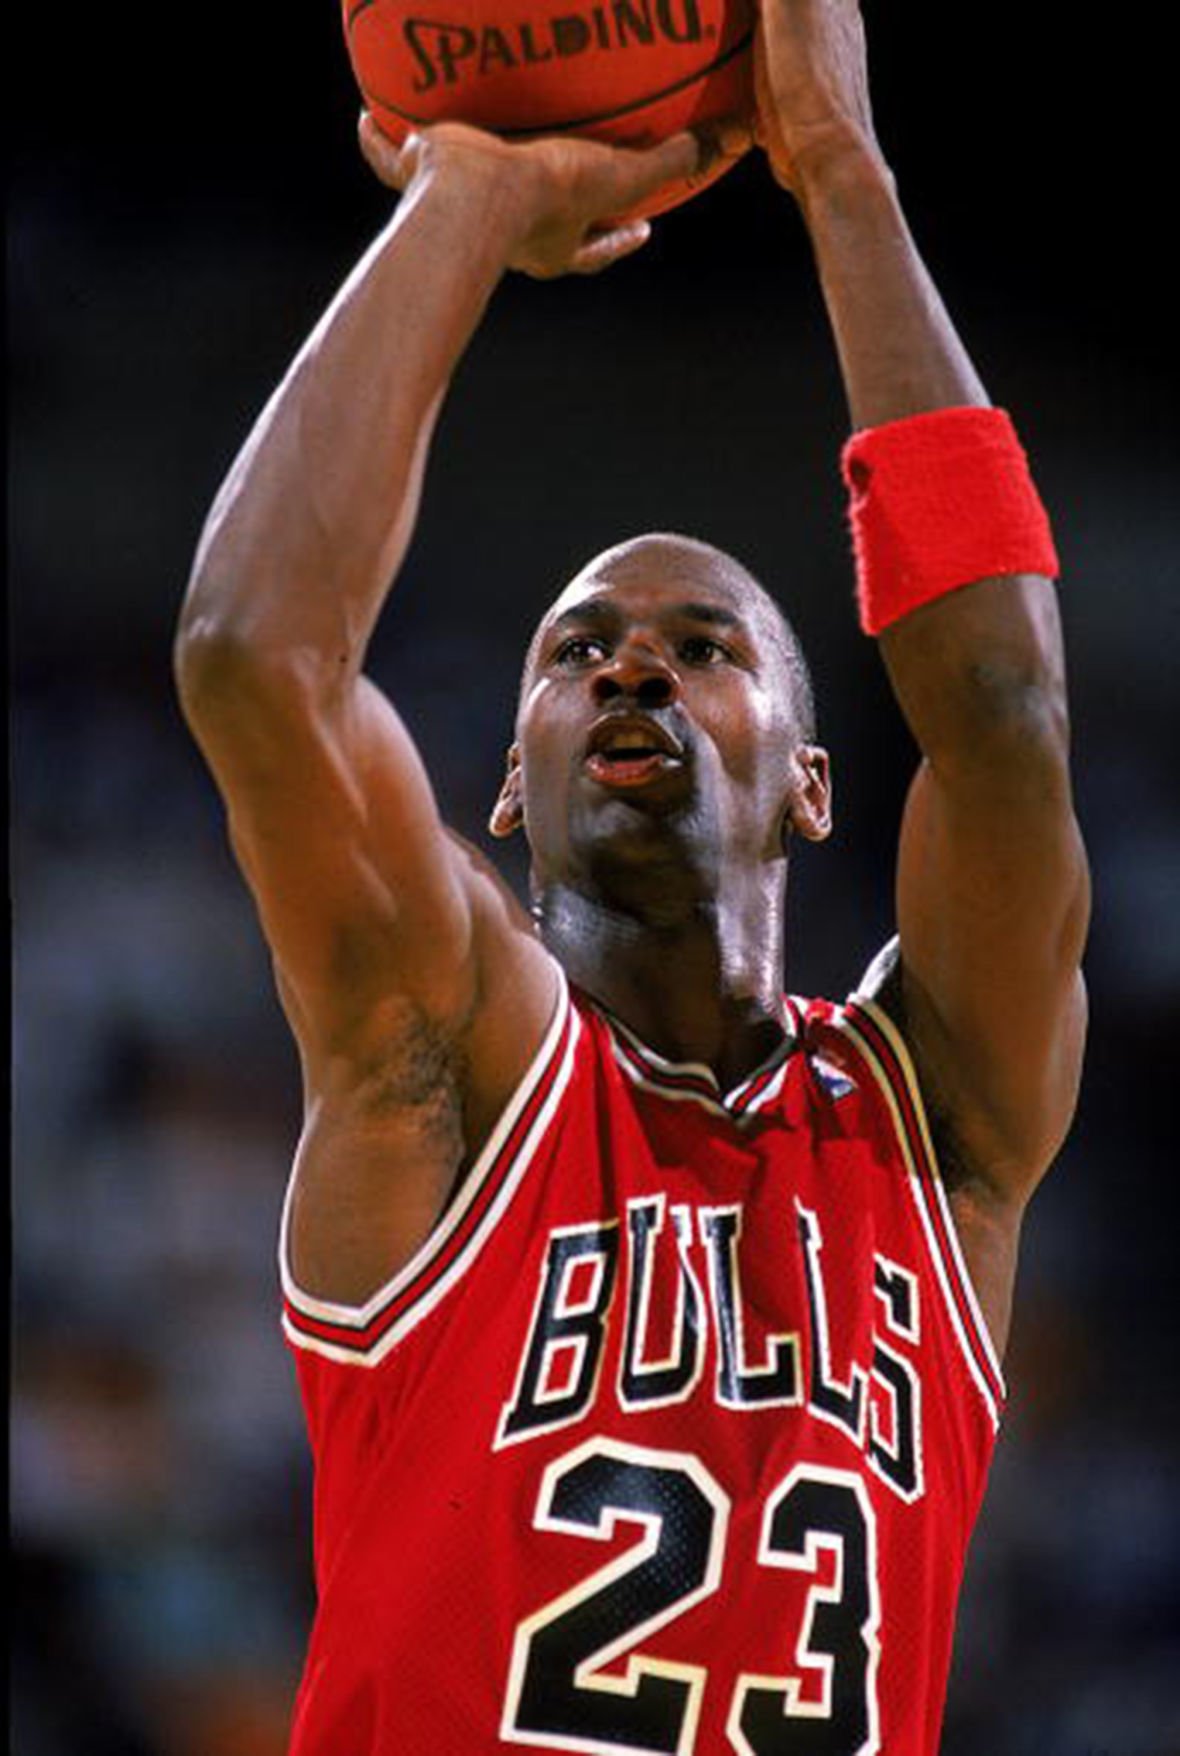 Legends profile: Michael Jordan | NBA.com